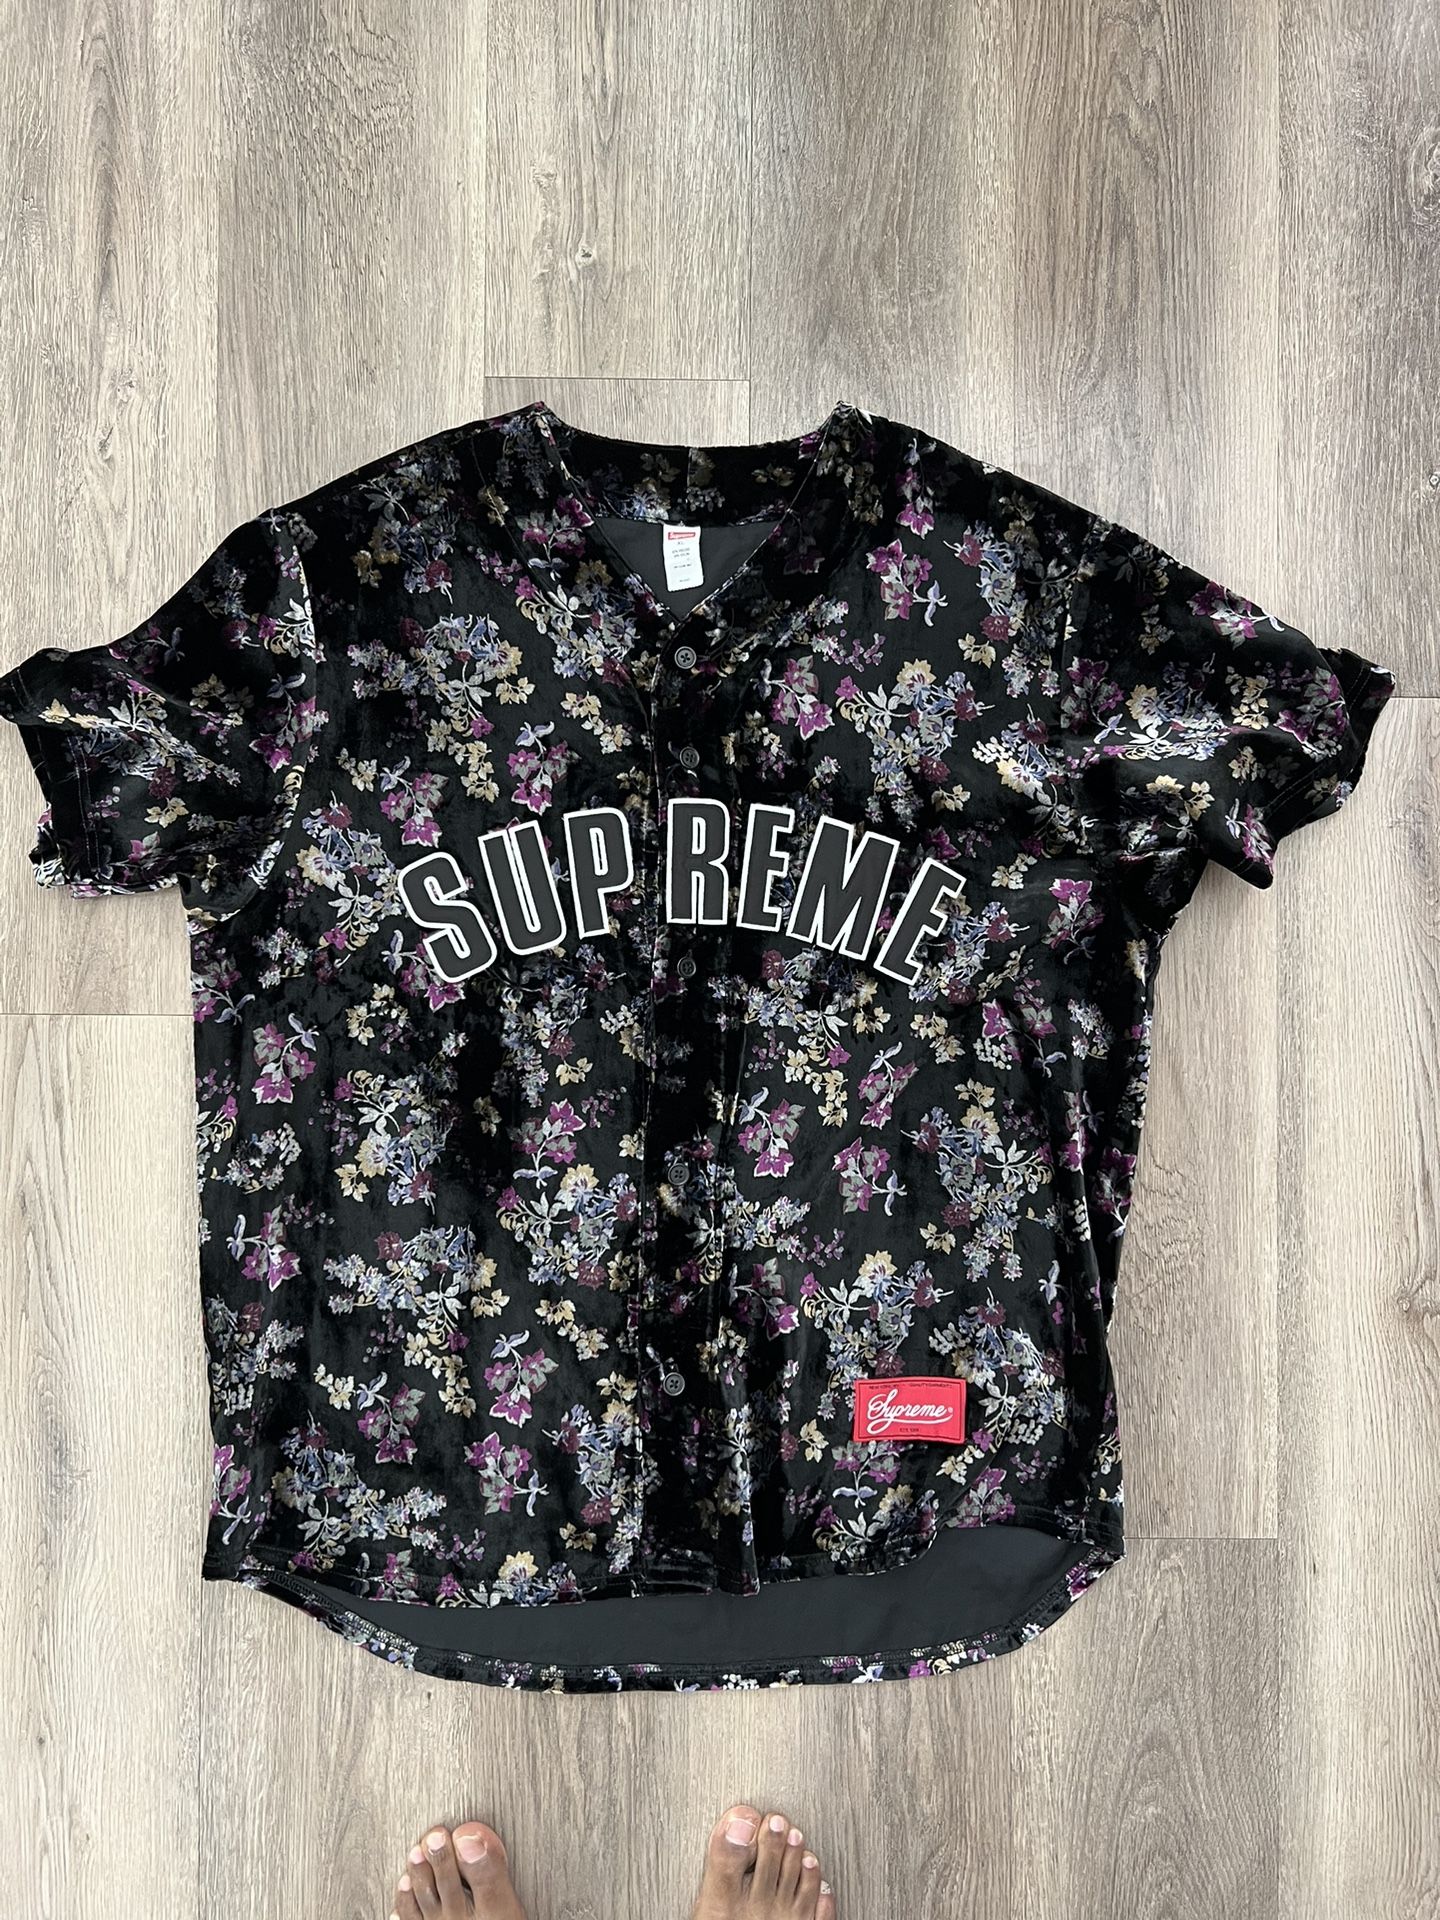 Supreme Floral Baseball Jersey XL